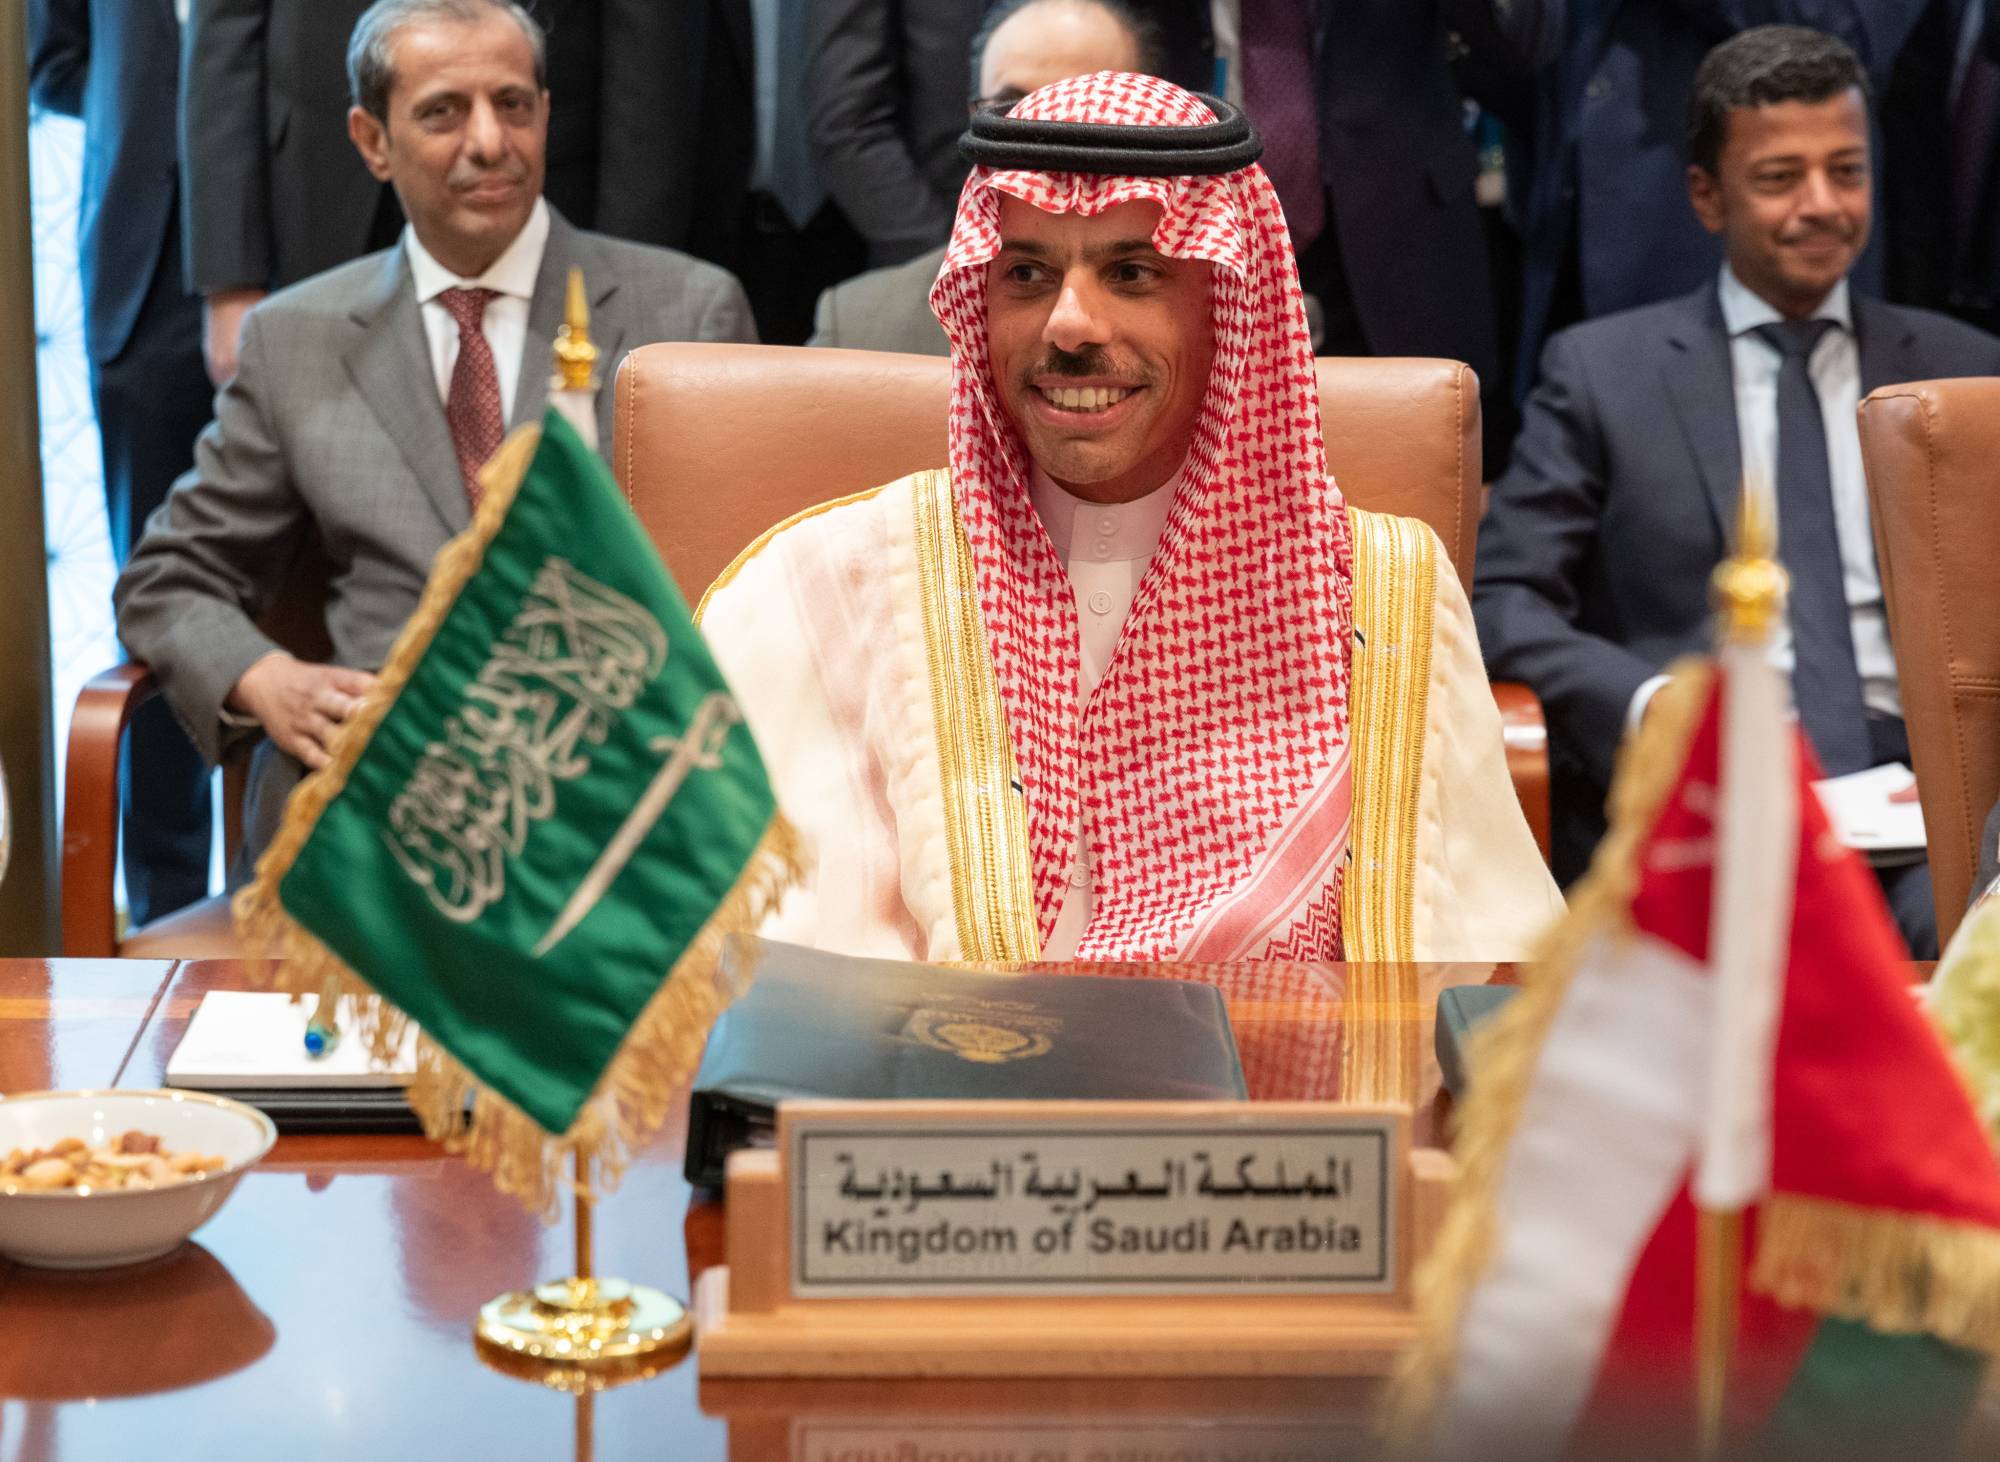 وزير الخارجية ورئيس مجلس التعاون يبحثان المبادرات الخليجية